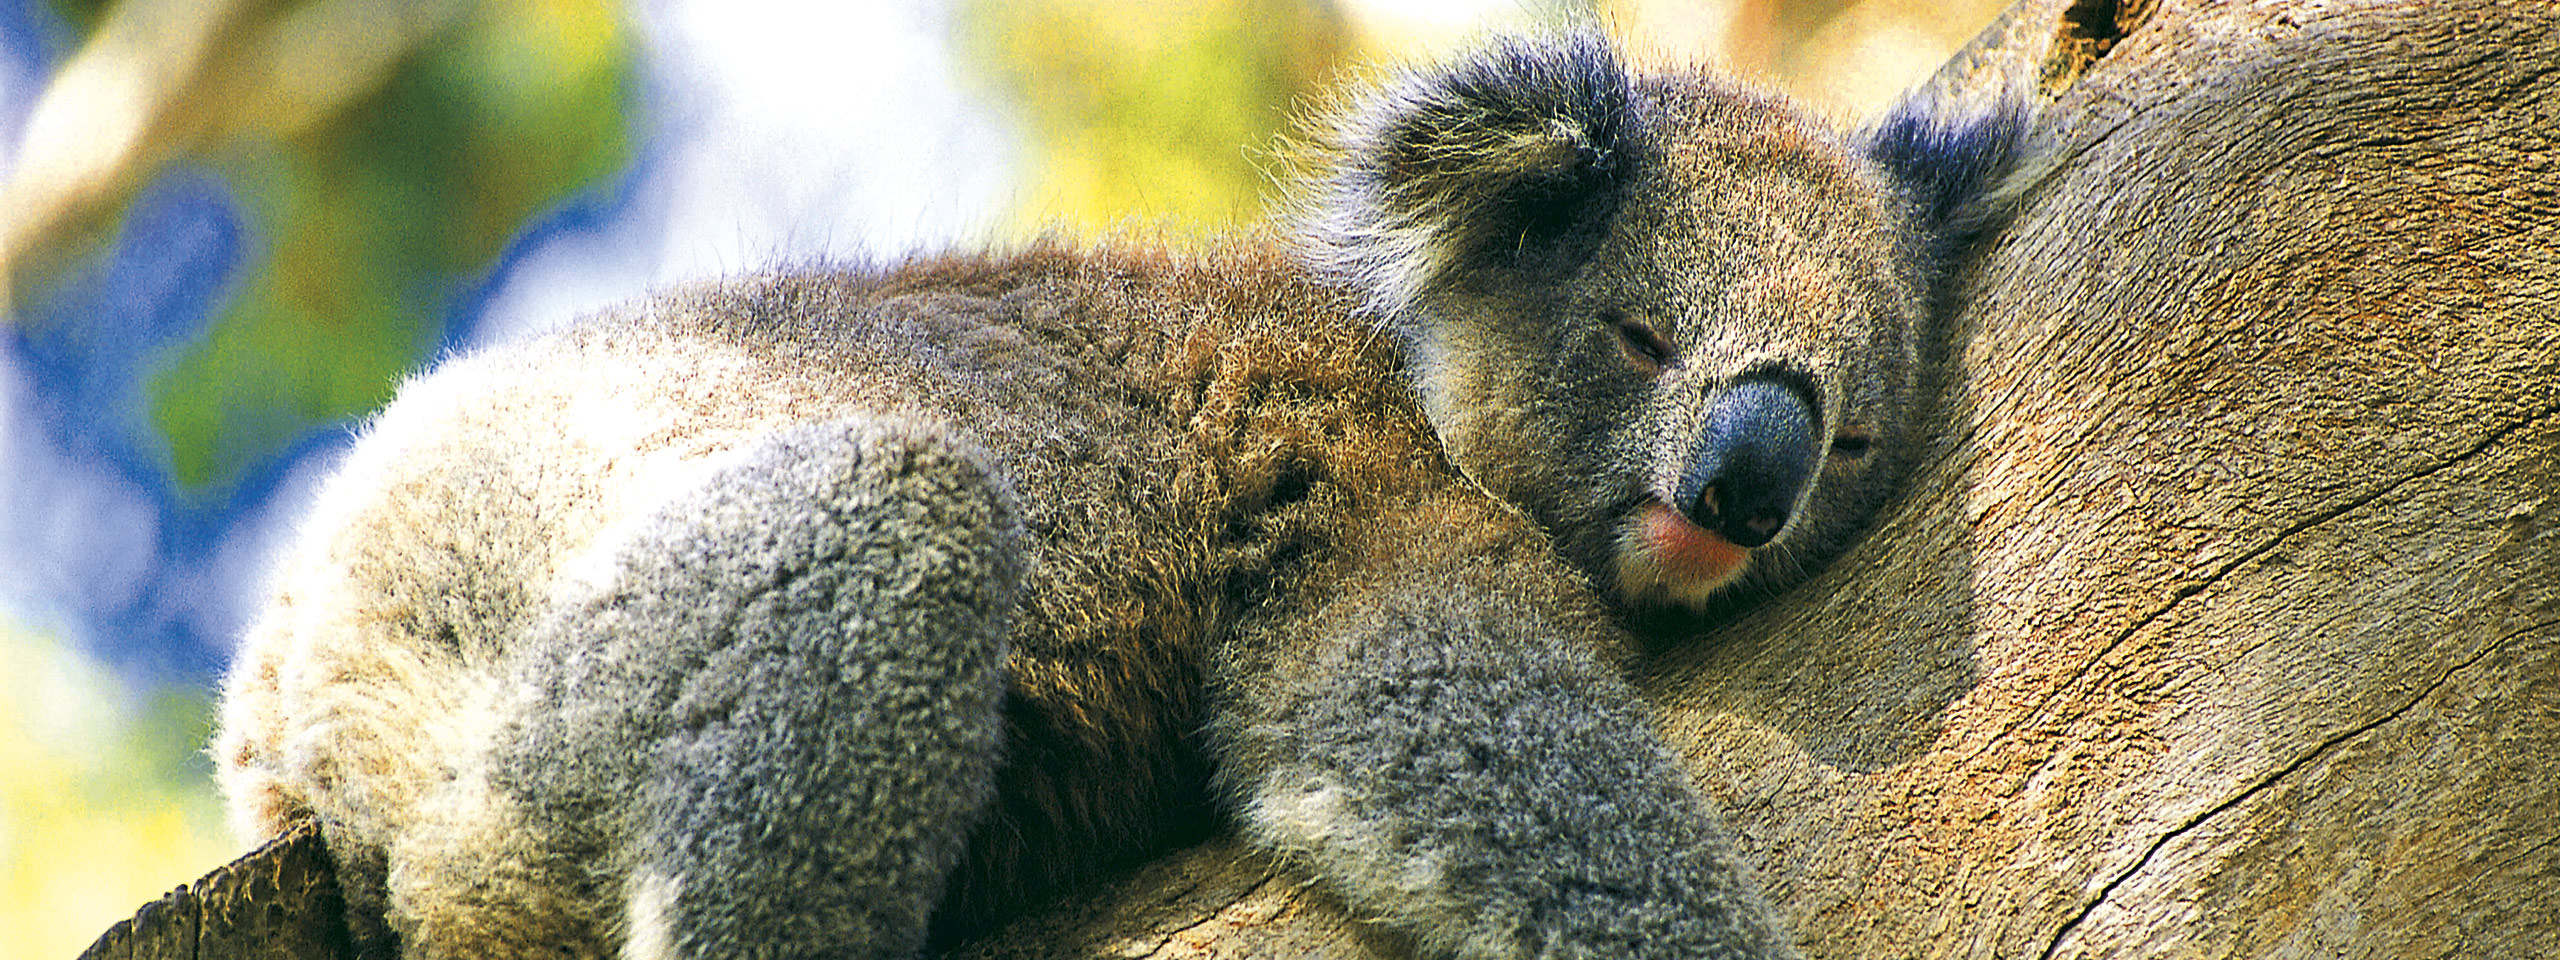 Sleeping Koala